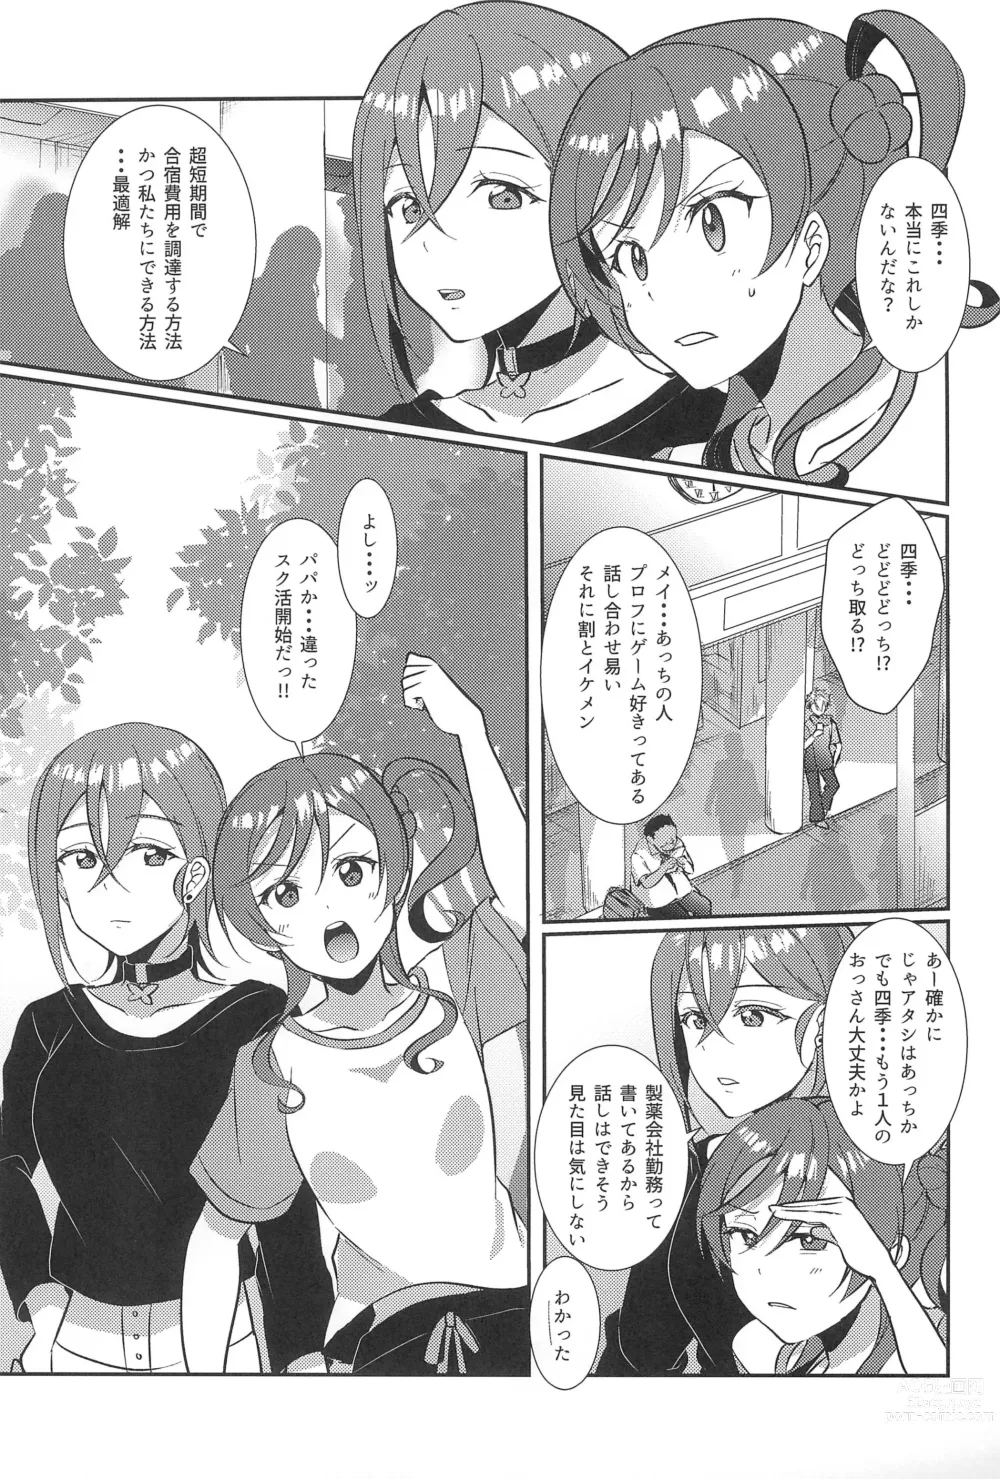 Page 5 of doujinshi Wakana Shiki